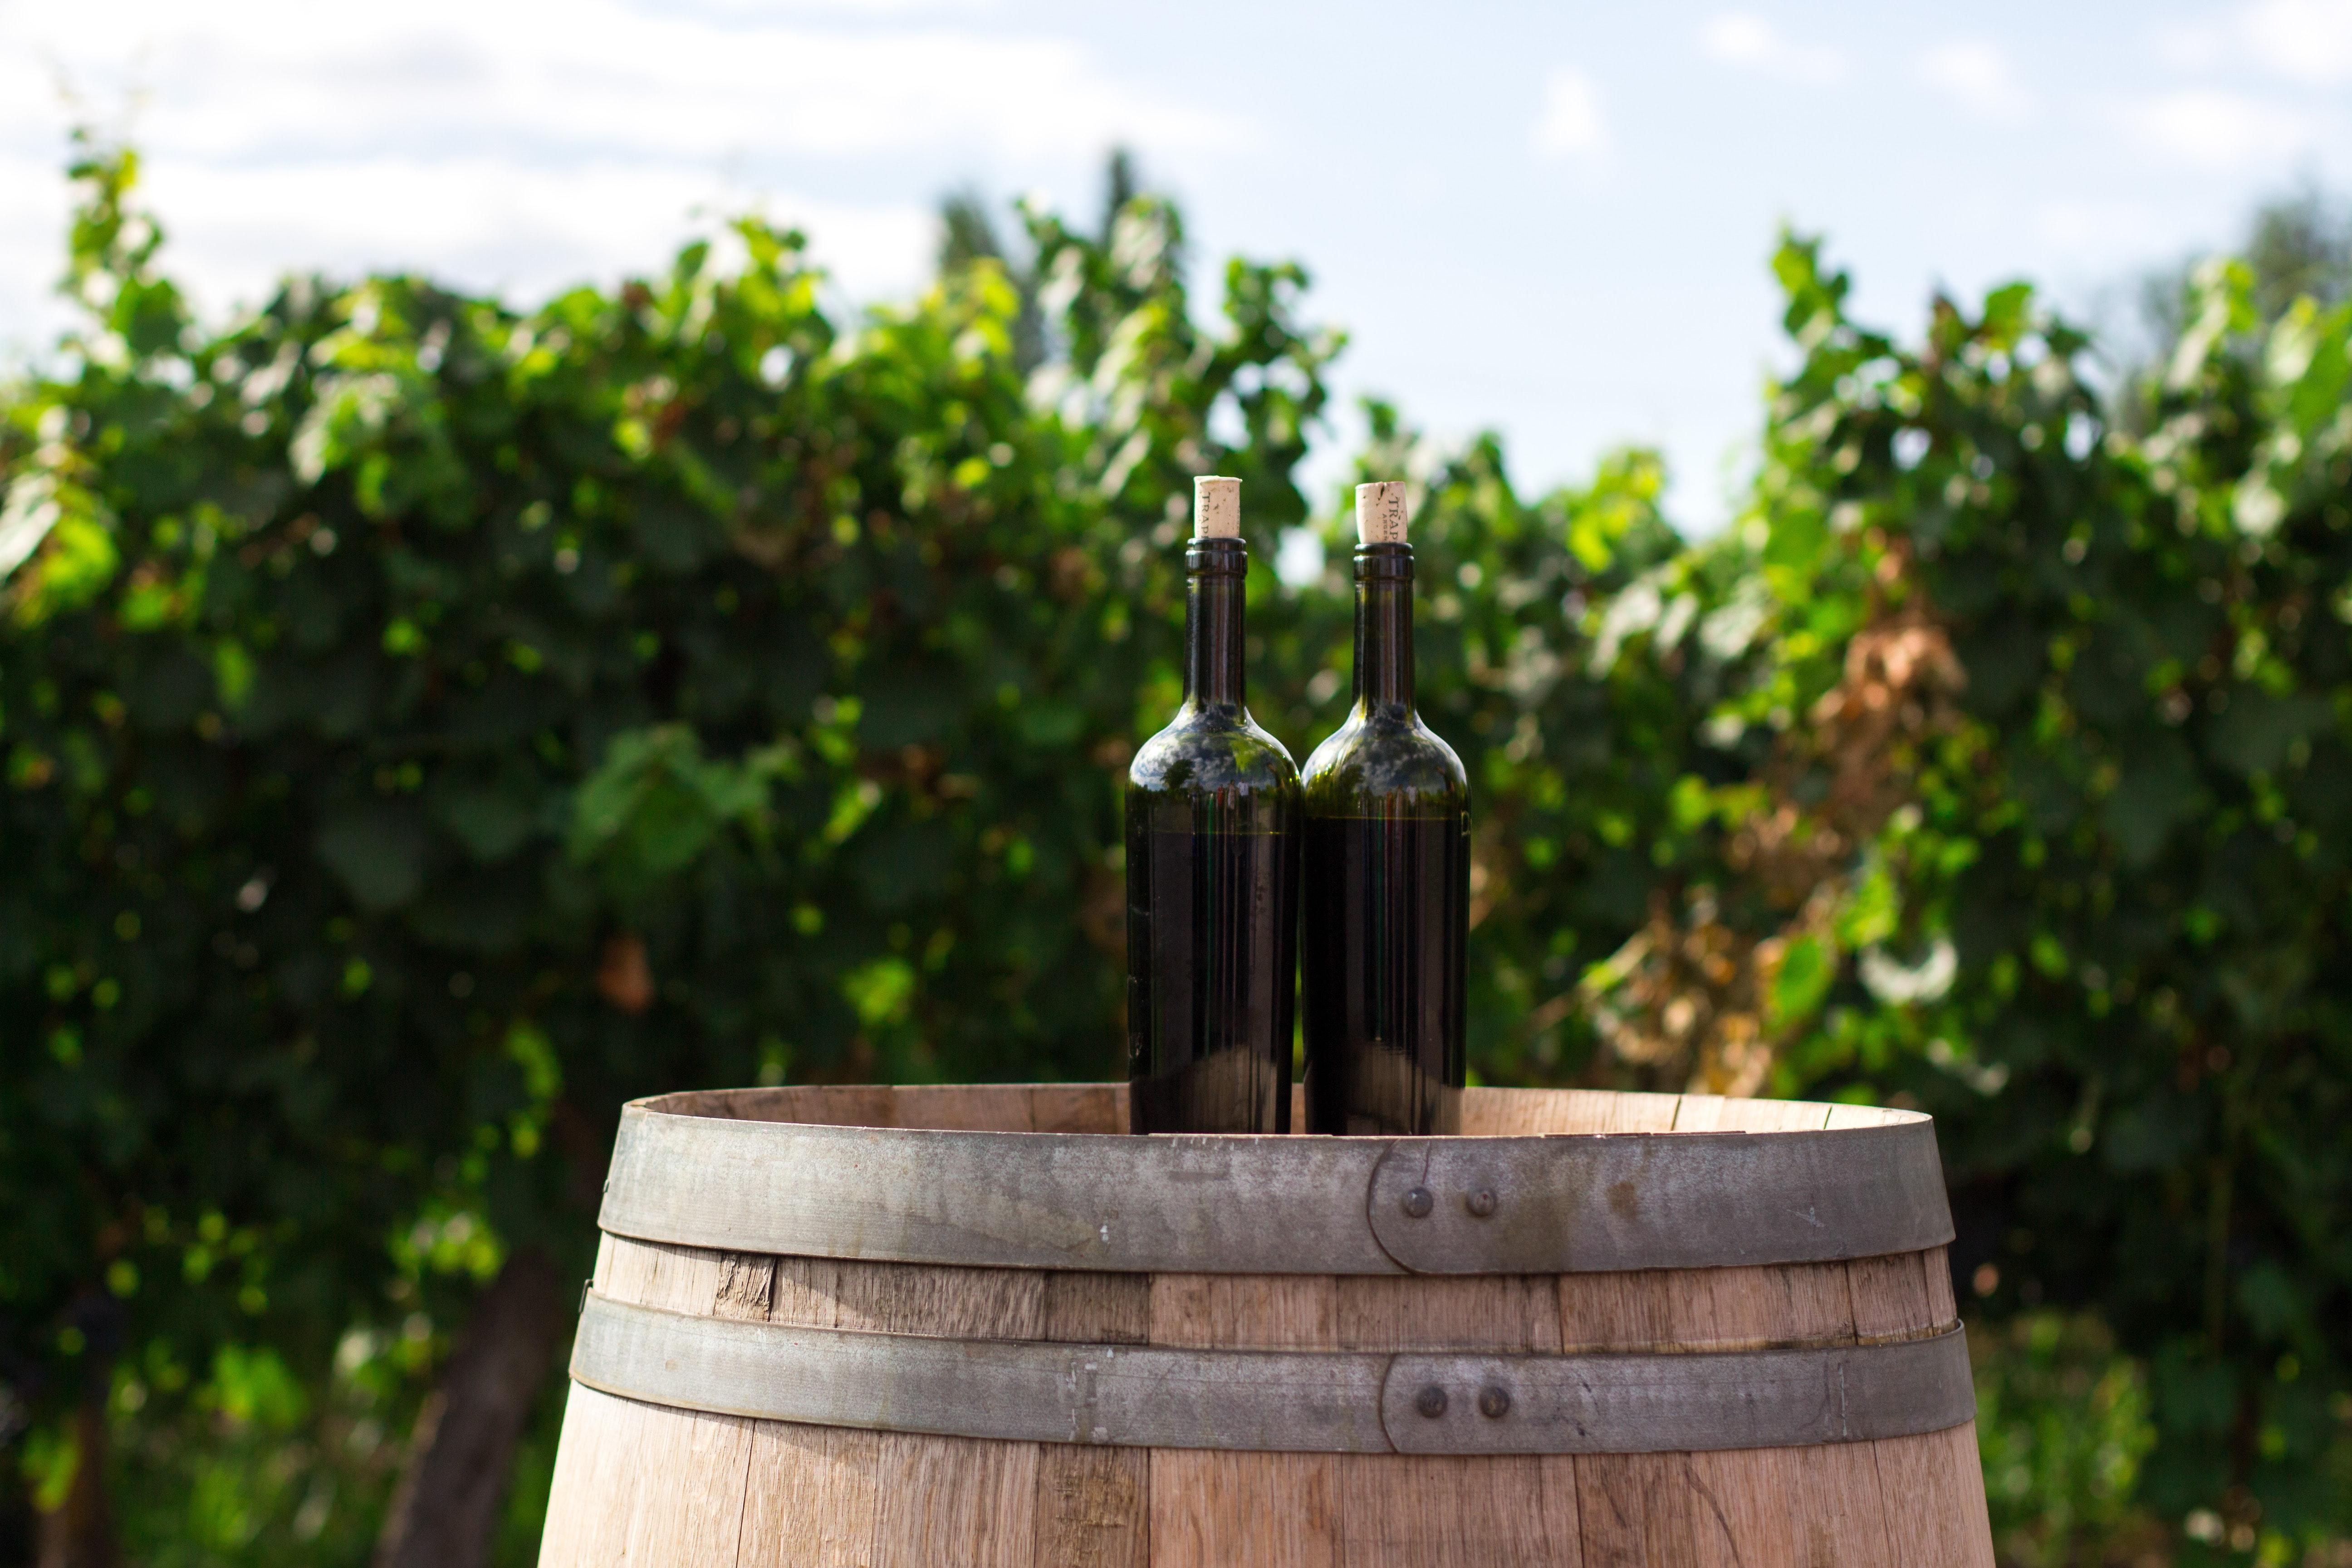 Сталь или дубовая бочка: как выдержка влияет на вино